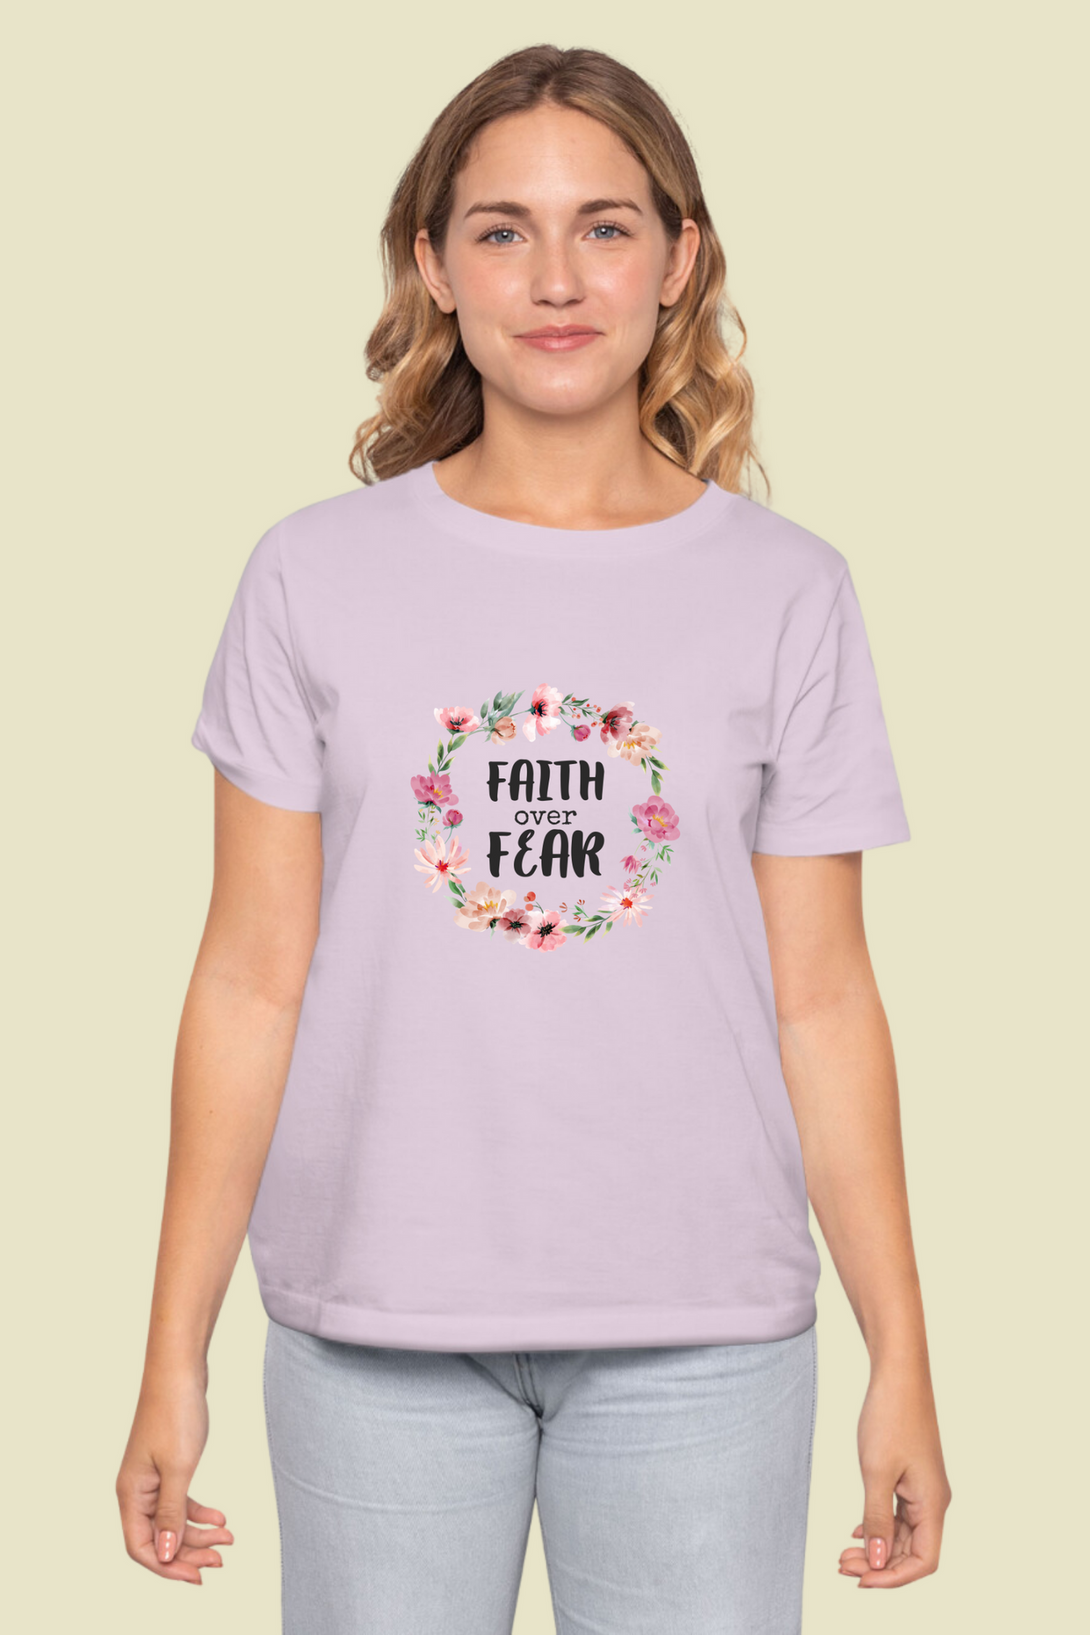 Faith Over Fear Printed T-Shirt For Women - WowWaves - 10